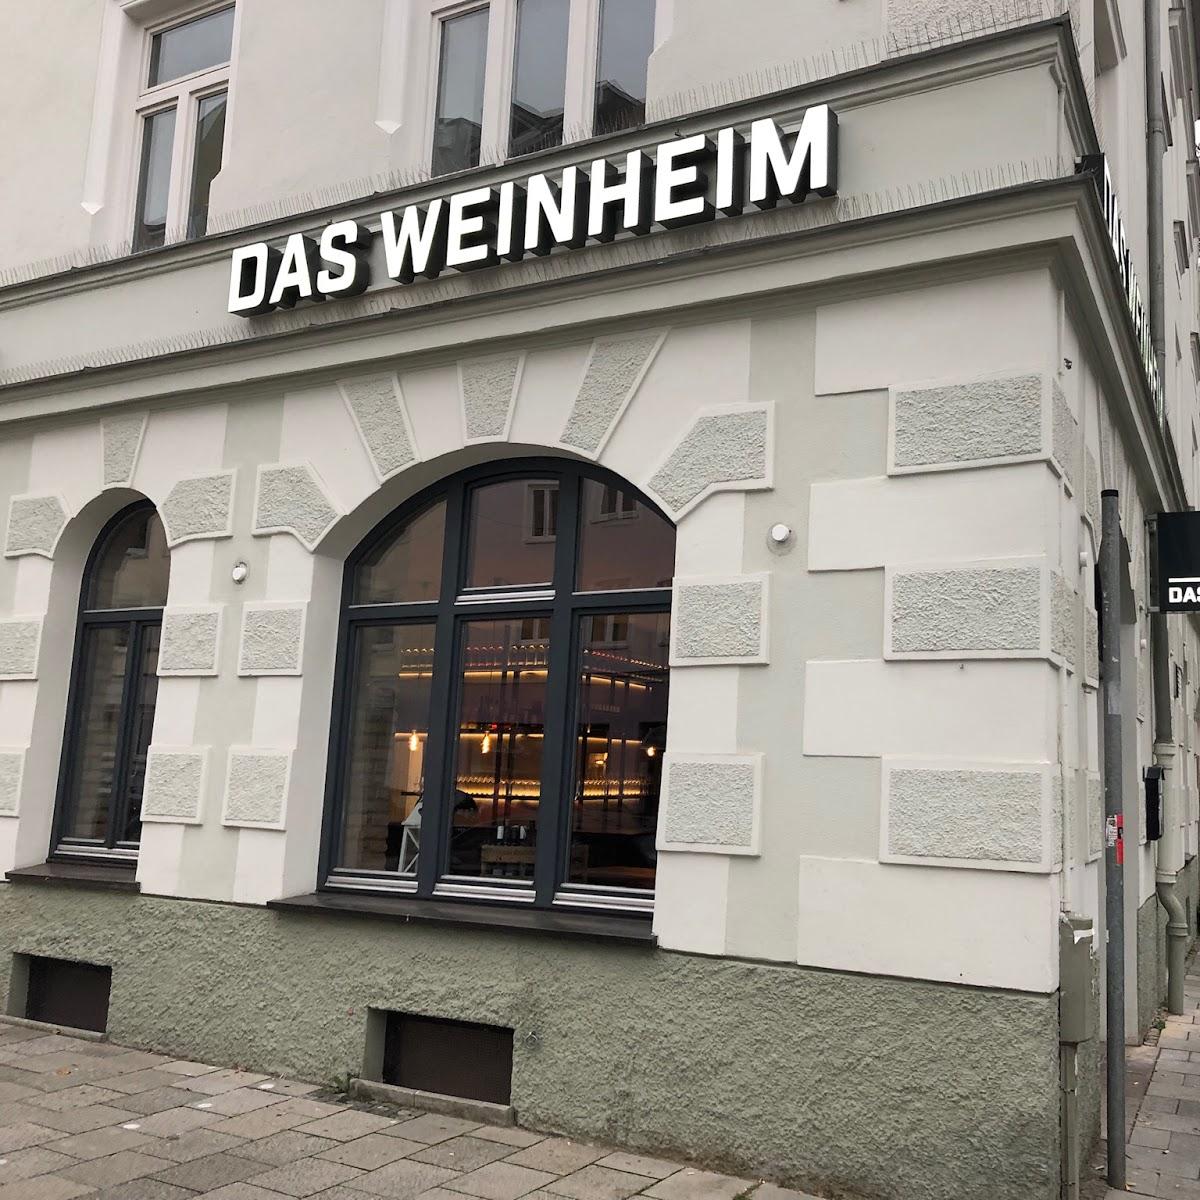 Restaurant "Das Weinheim" in München